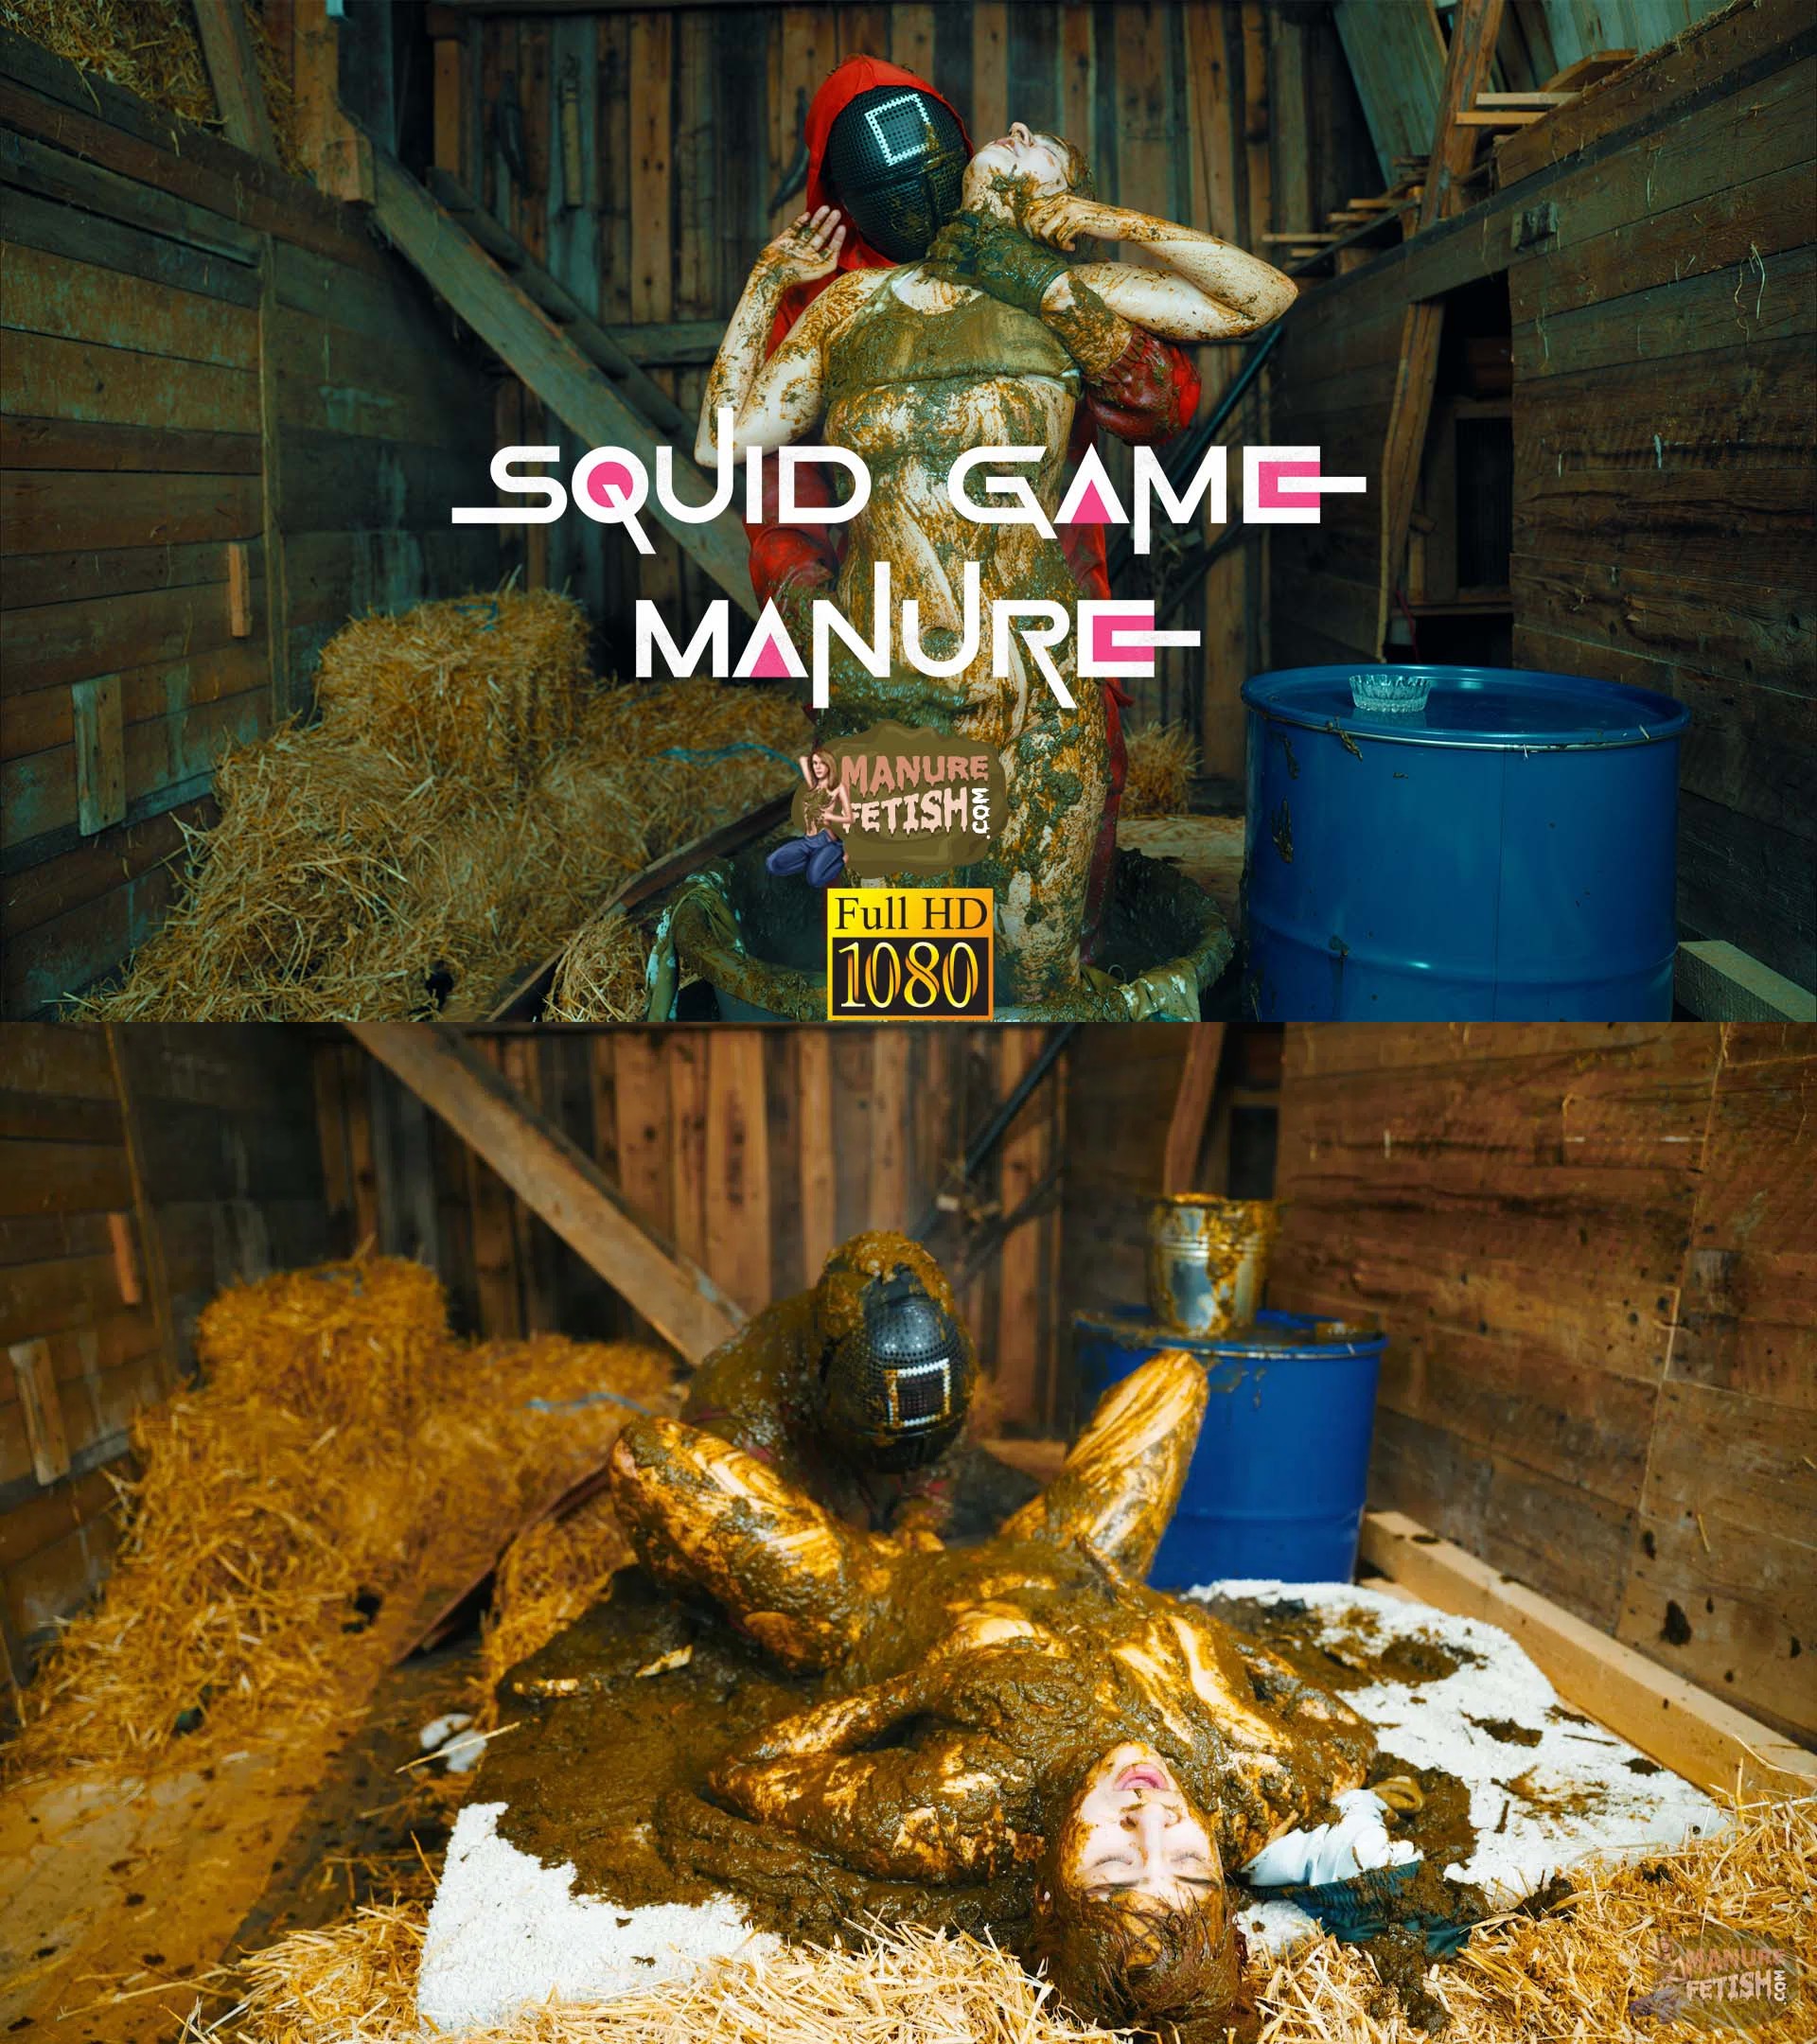 Squid game manure (36.99 € ManureFetish)